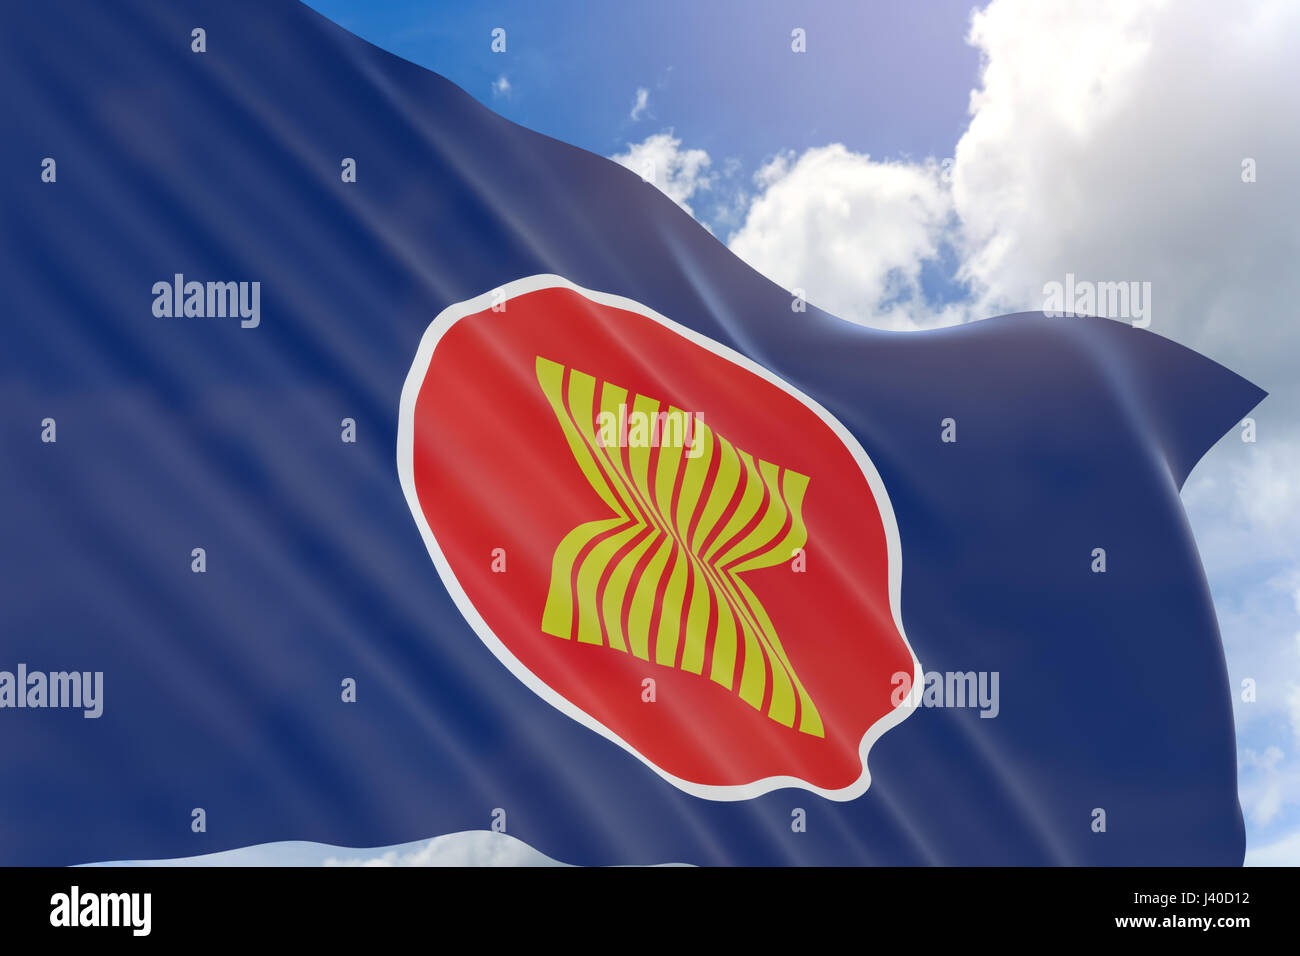 3D-Rendering des Asean Wirtschaftsgemeinschaft Fahnenschwingen auf blauen Himmelshintergrund, die Fahne der Vereinigung Südostasiatischer Nationen (AEC) Stockfoto